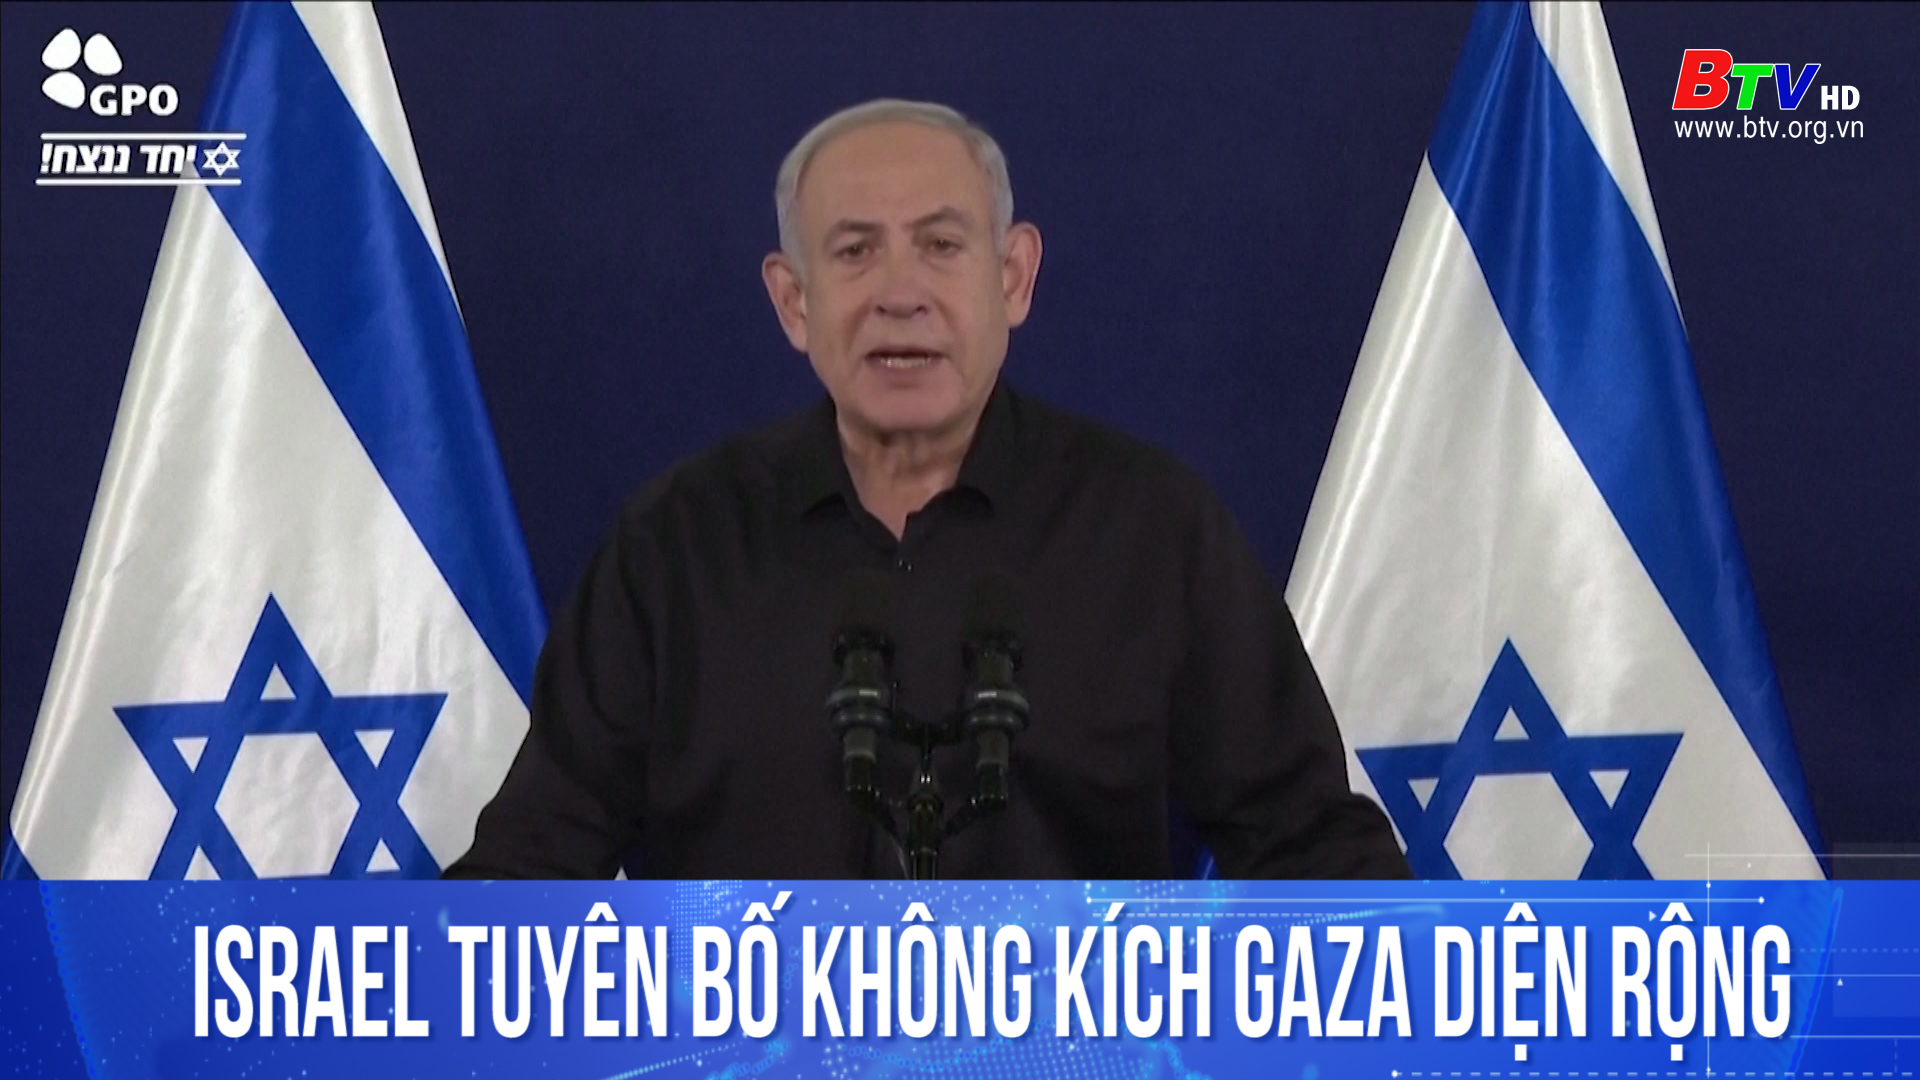 Israel tuyên bố không kích Gaza diện rộng